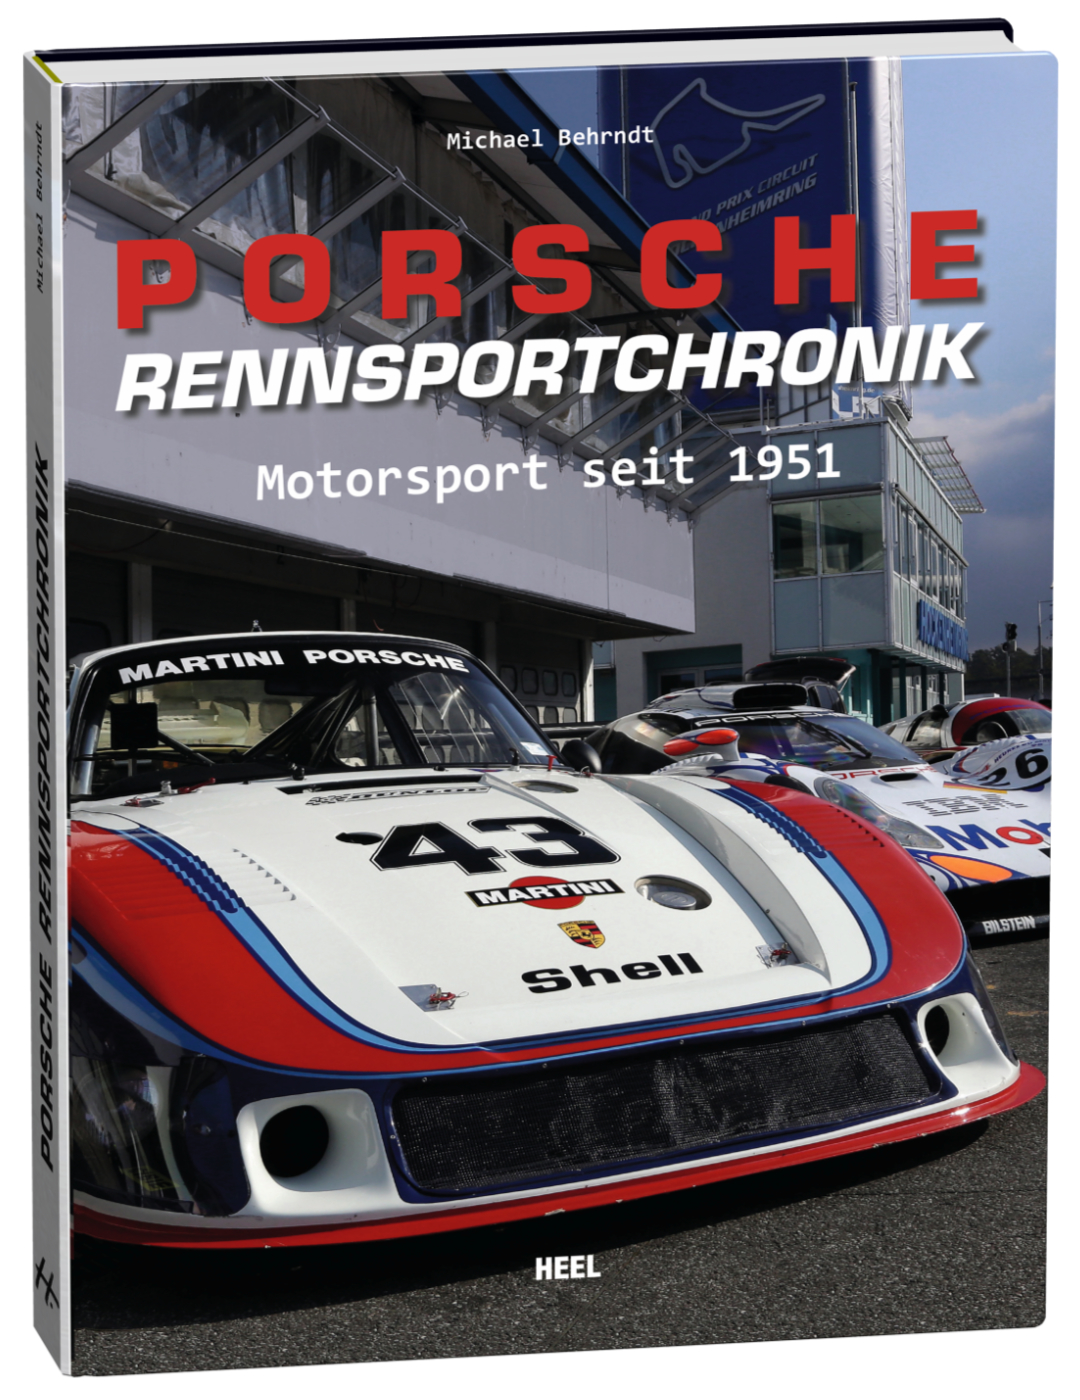 Porsche Rennsportchronik